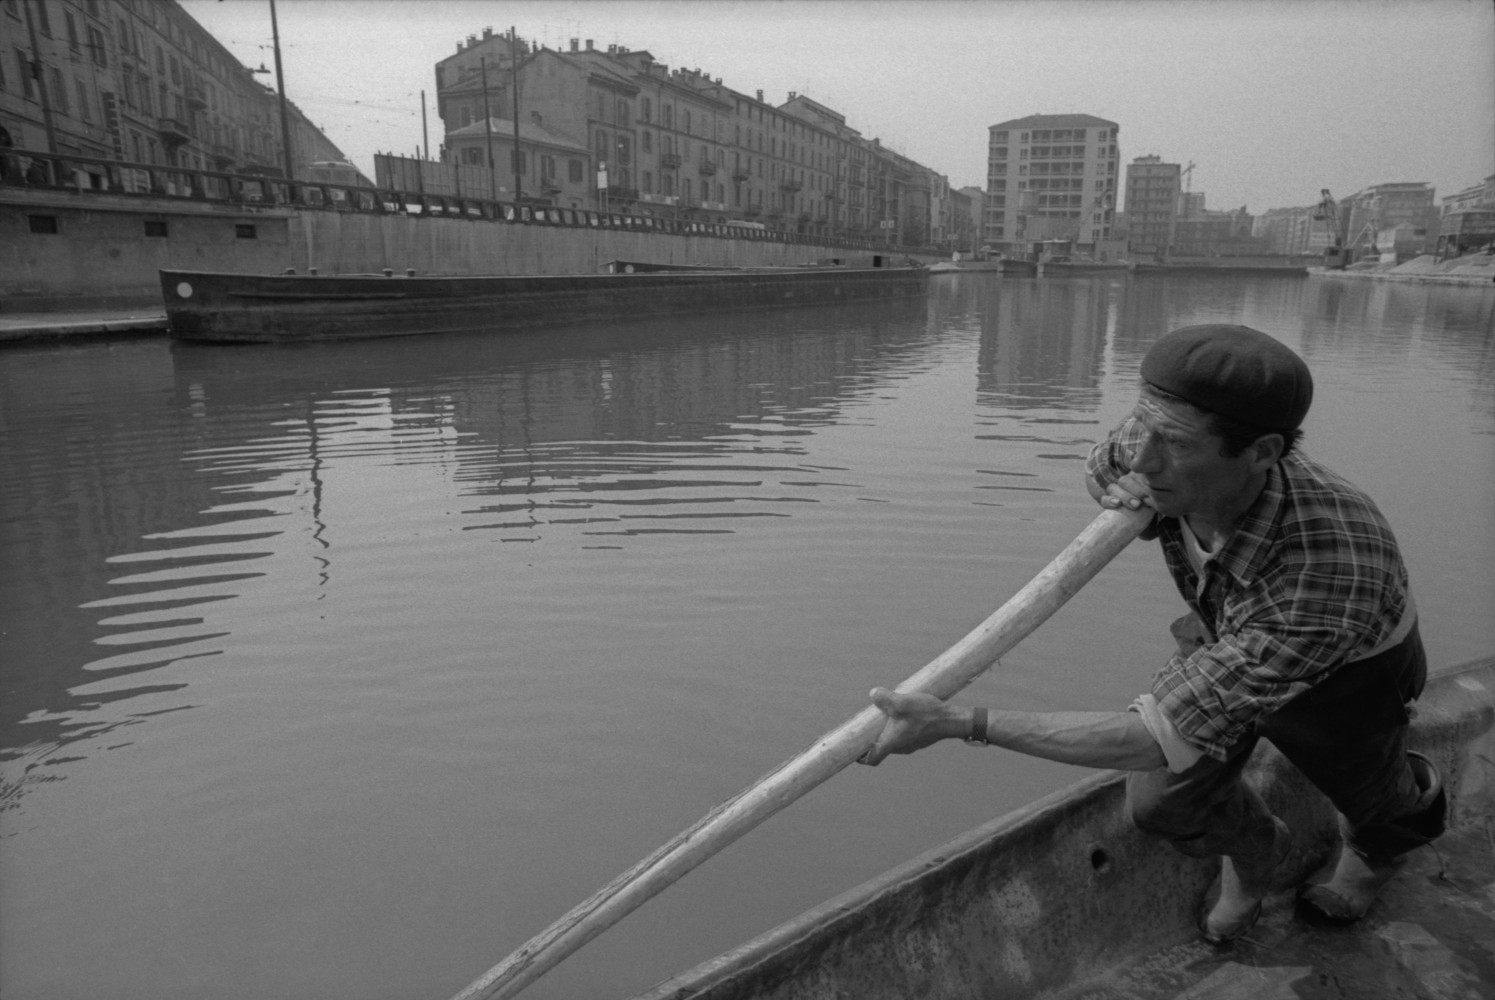 Toni Nicolini, Uomo trasporta della ghiaia sul barcùn, la tradizionale chiatta milanese, nella Darsena di Milano, Milano, 1970